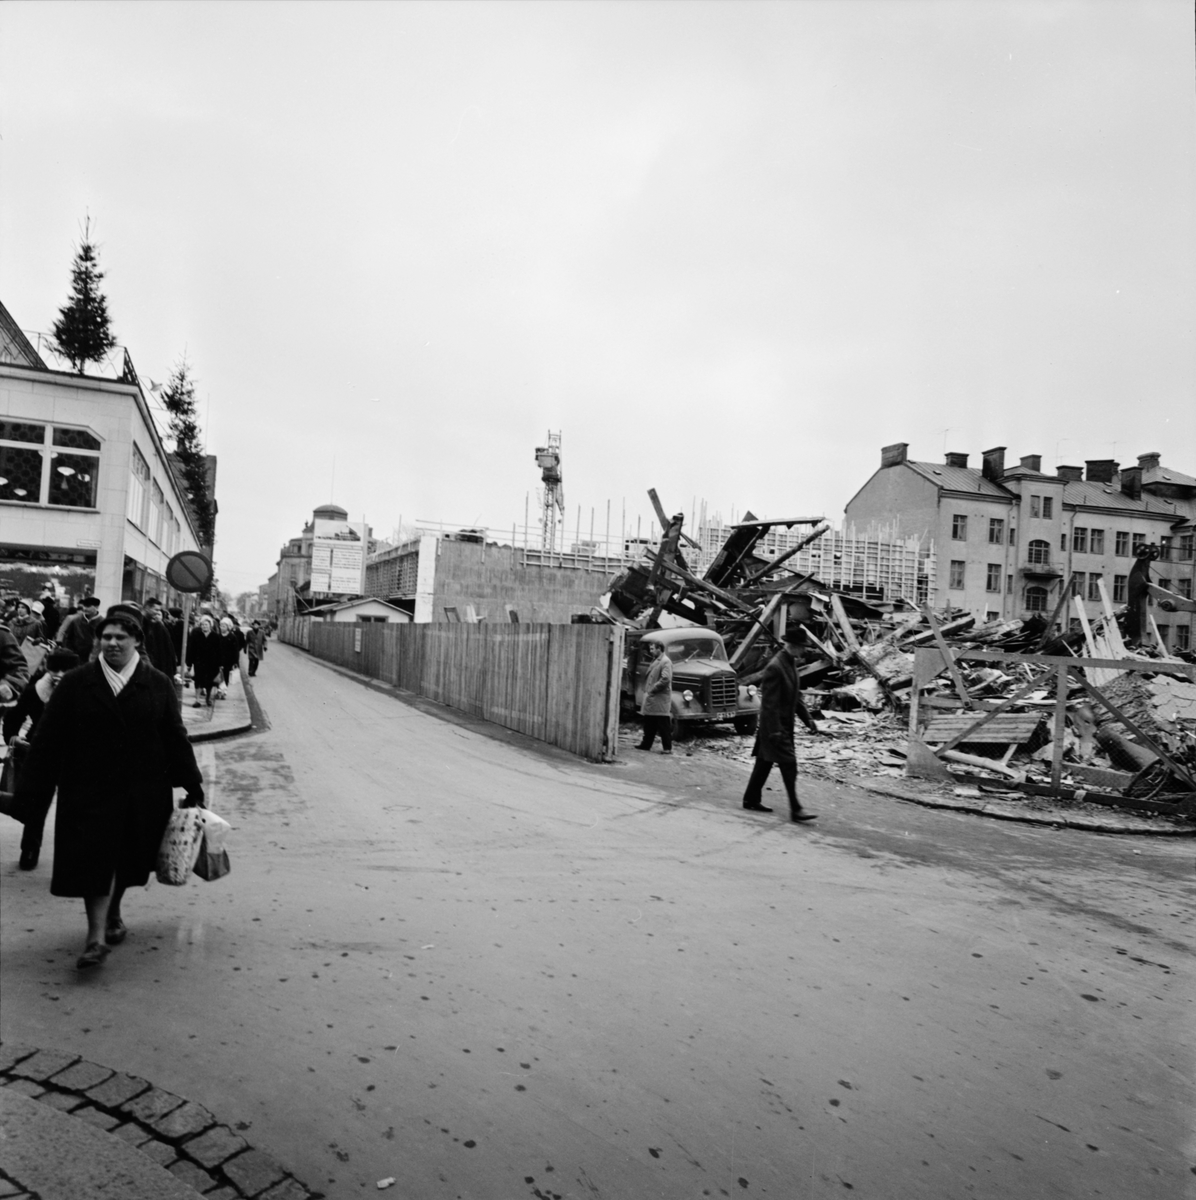 "Landings vid Kungsängsgatan rivs", kvarteret Duvan, Uppsala 1961